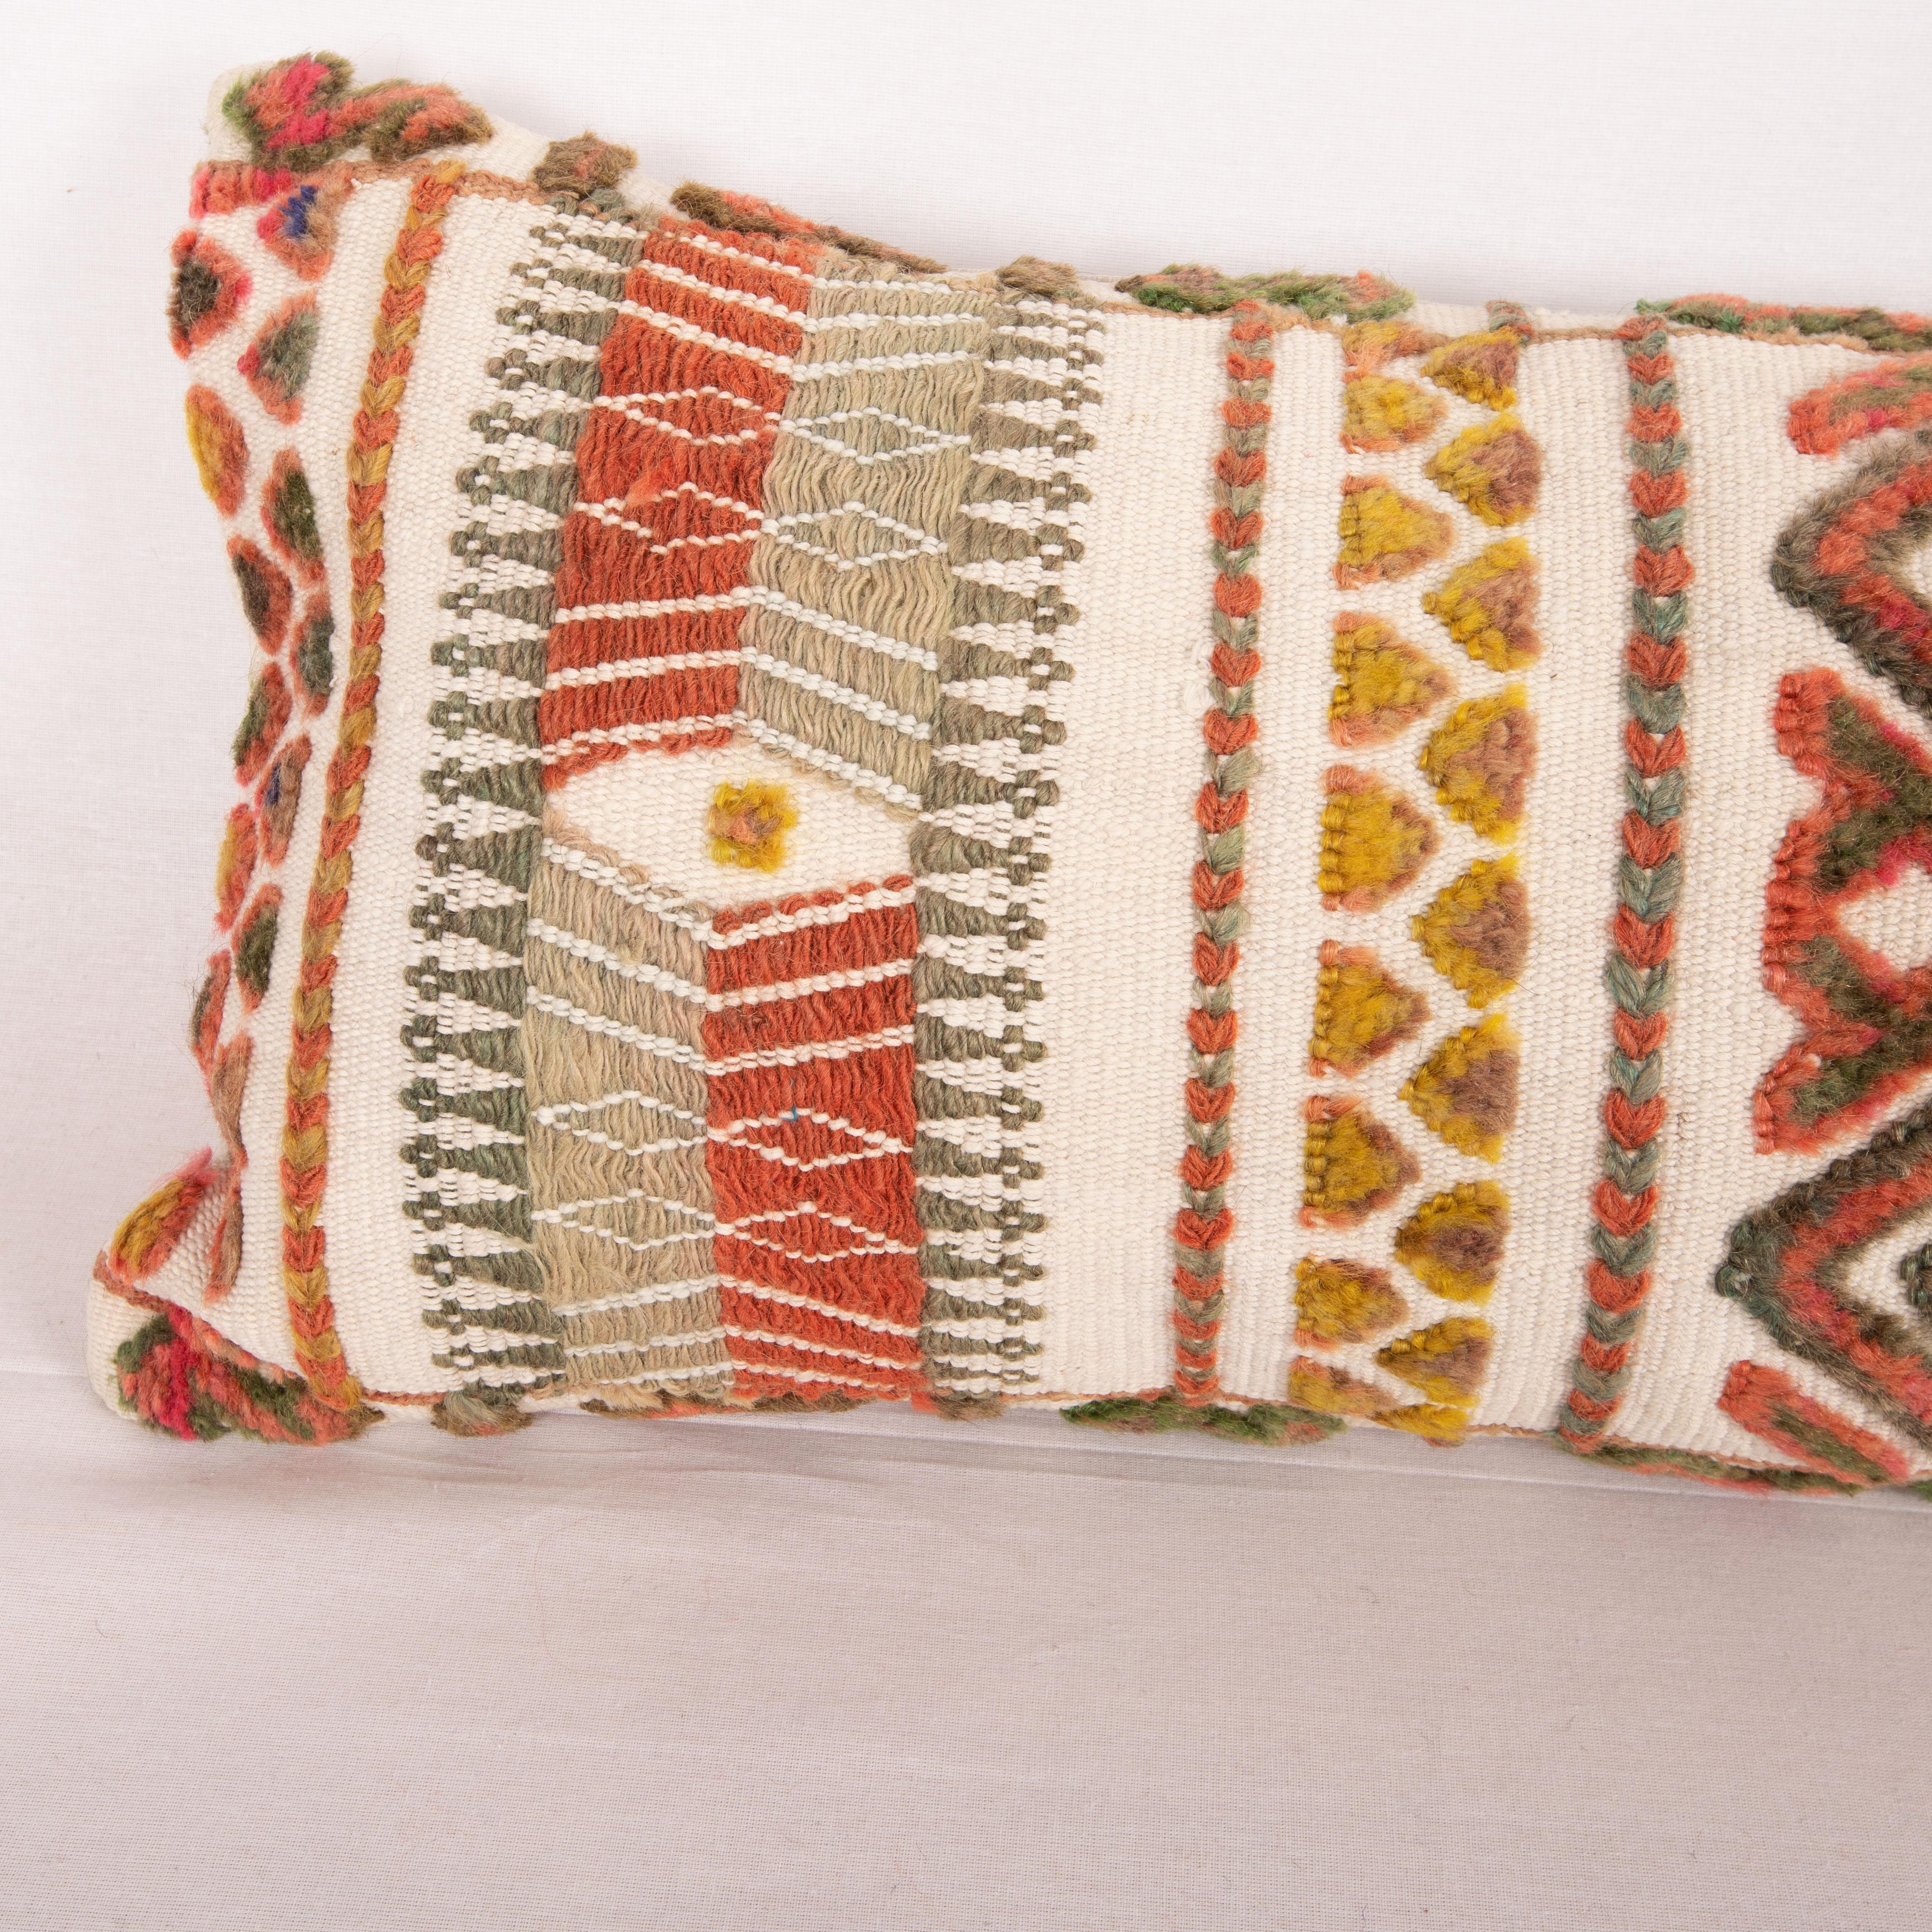 Hand-Woven Pillow Cover Made from an Early 20th C. Karakalpak Tent Band, Uzbekistan